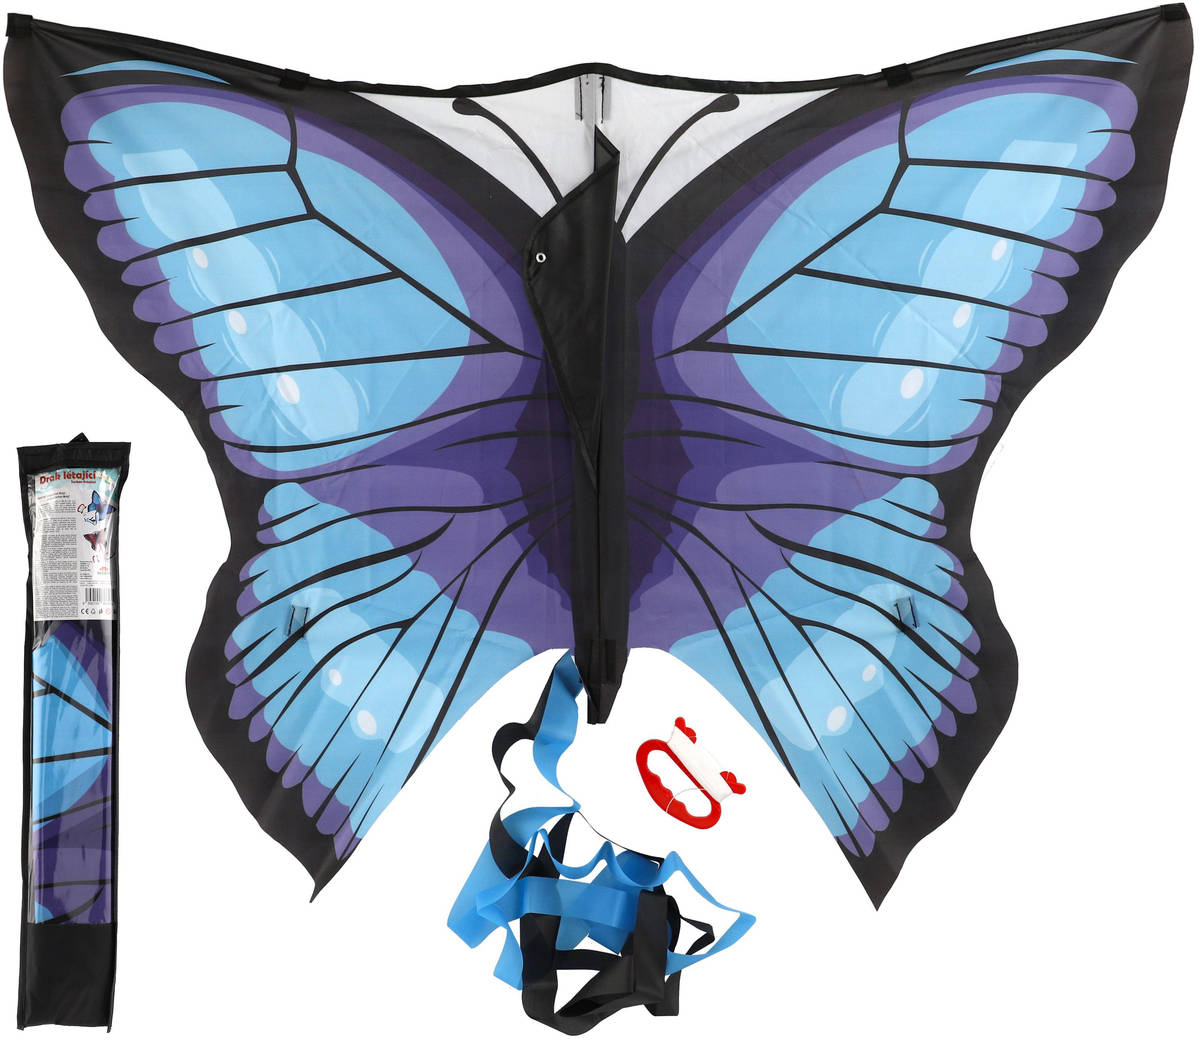 Drak létající motýl modrý 100x70cm nylon v látkovém sáčku